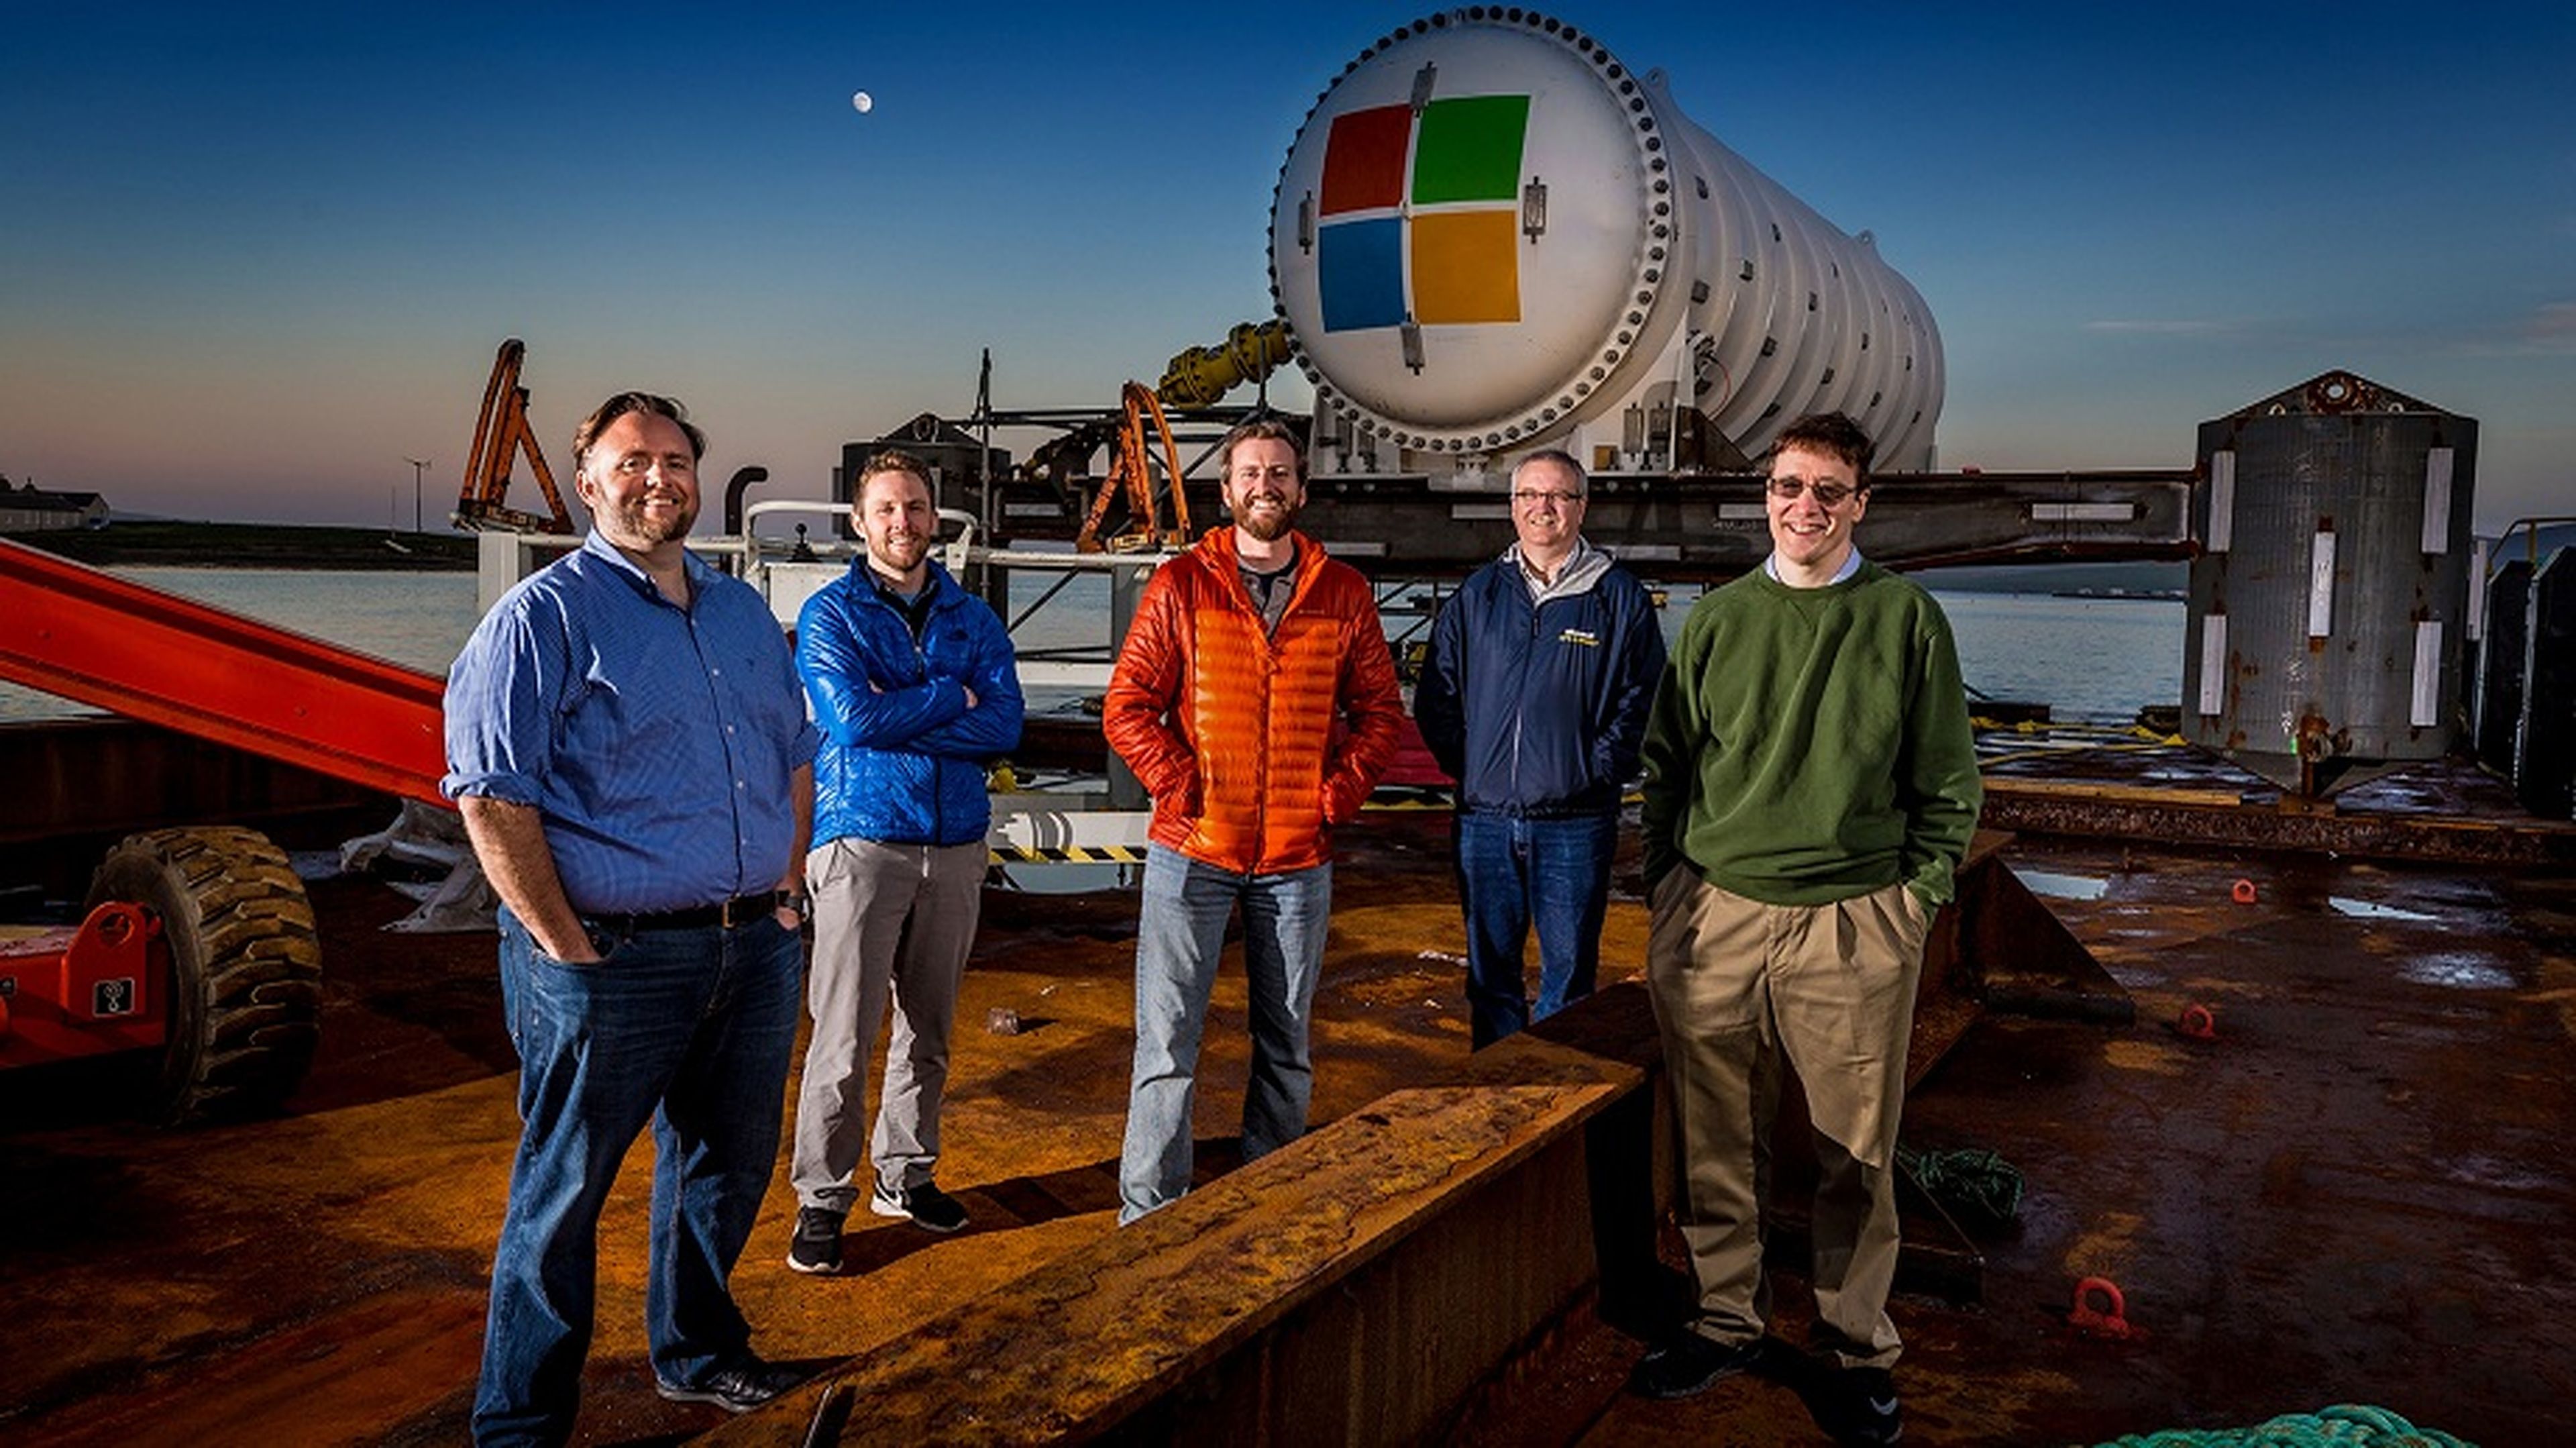 El equipo del proyecto Natick de Microsoft en un muelle en las islas Orcadas, Escocia. De izquierda a derecha: Mike Shepperd, Sam Ogden, Spencer Fowers, Eric Peterson y Ben Cutler.